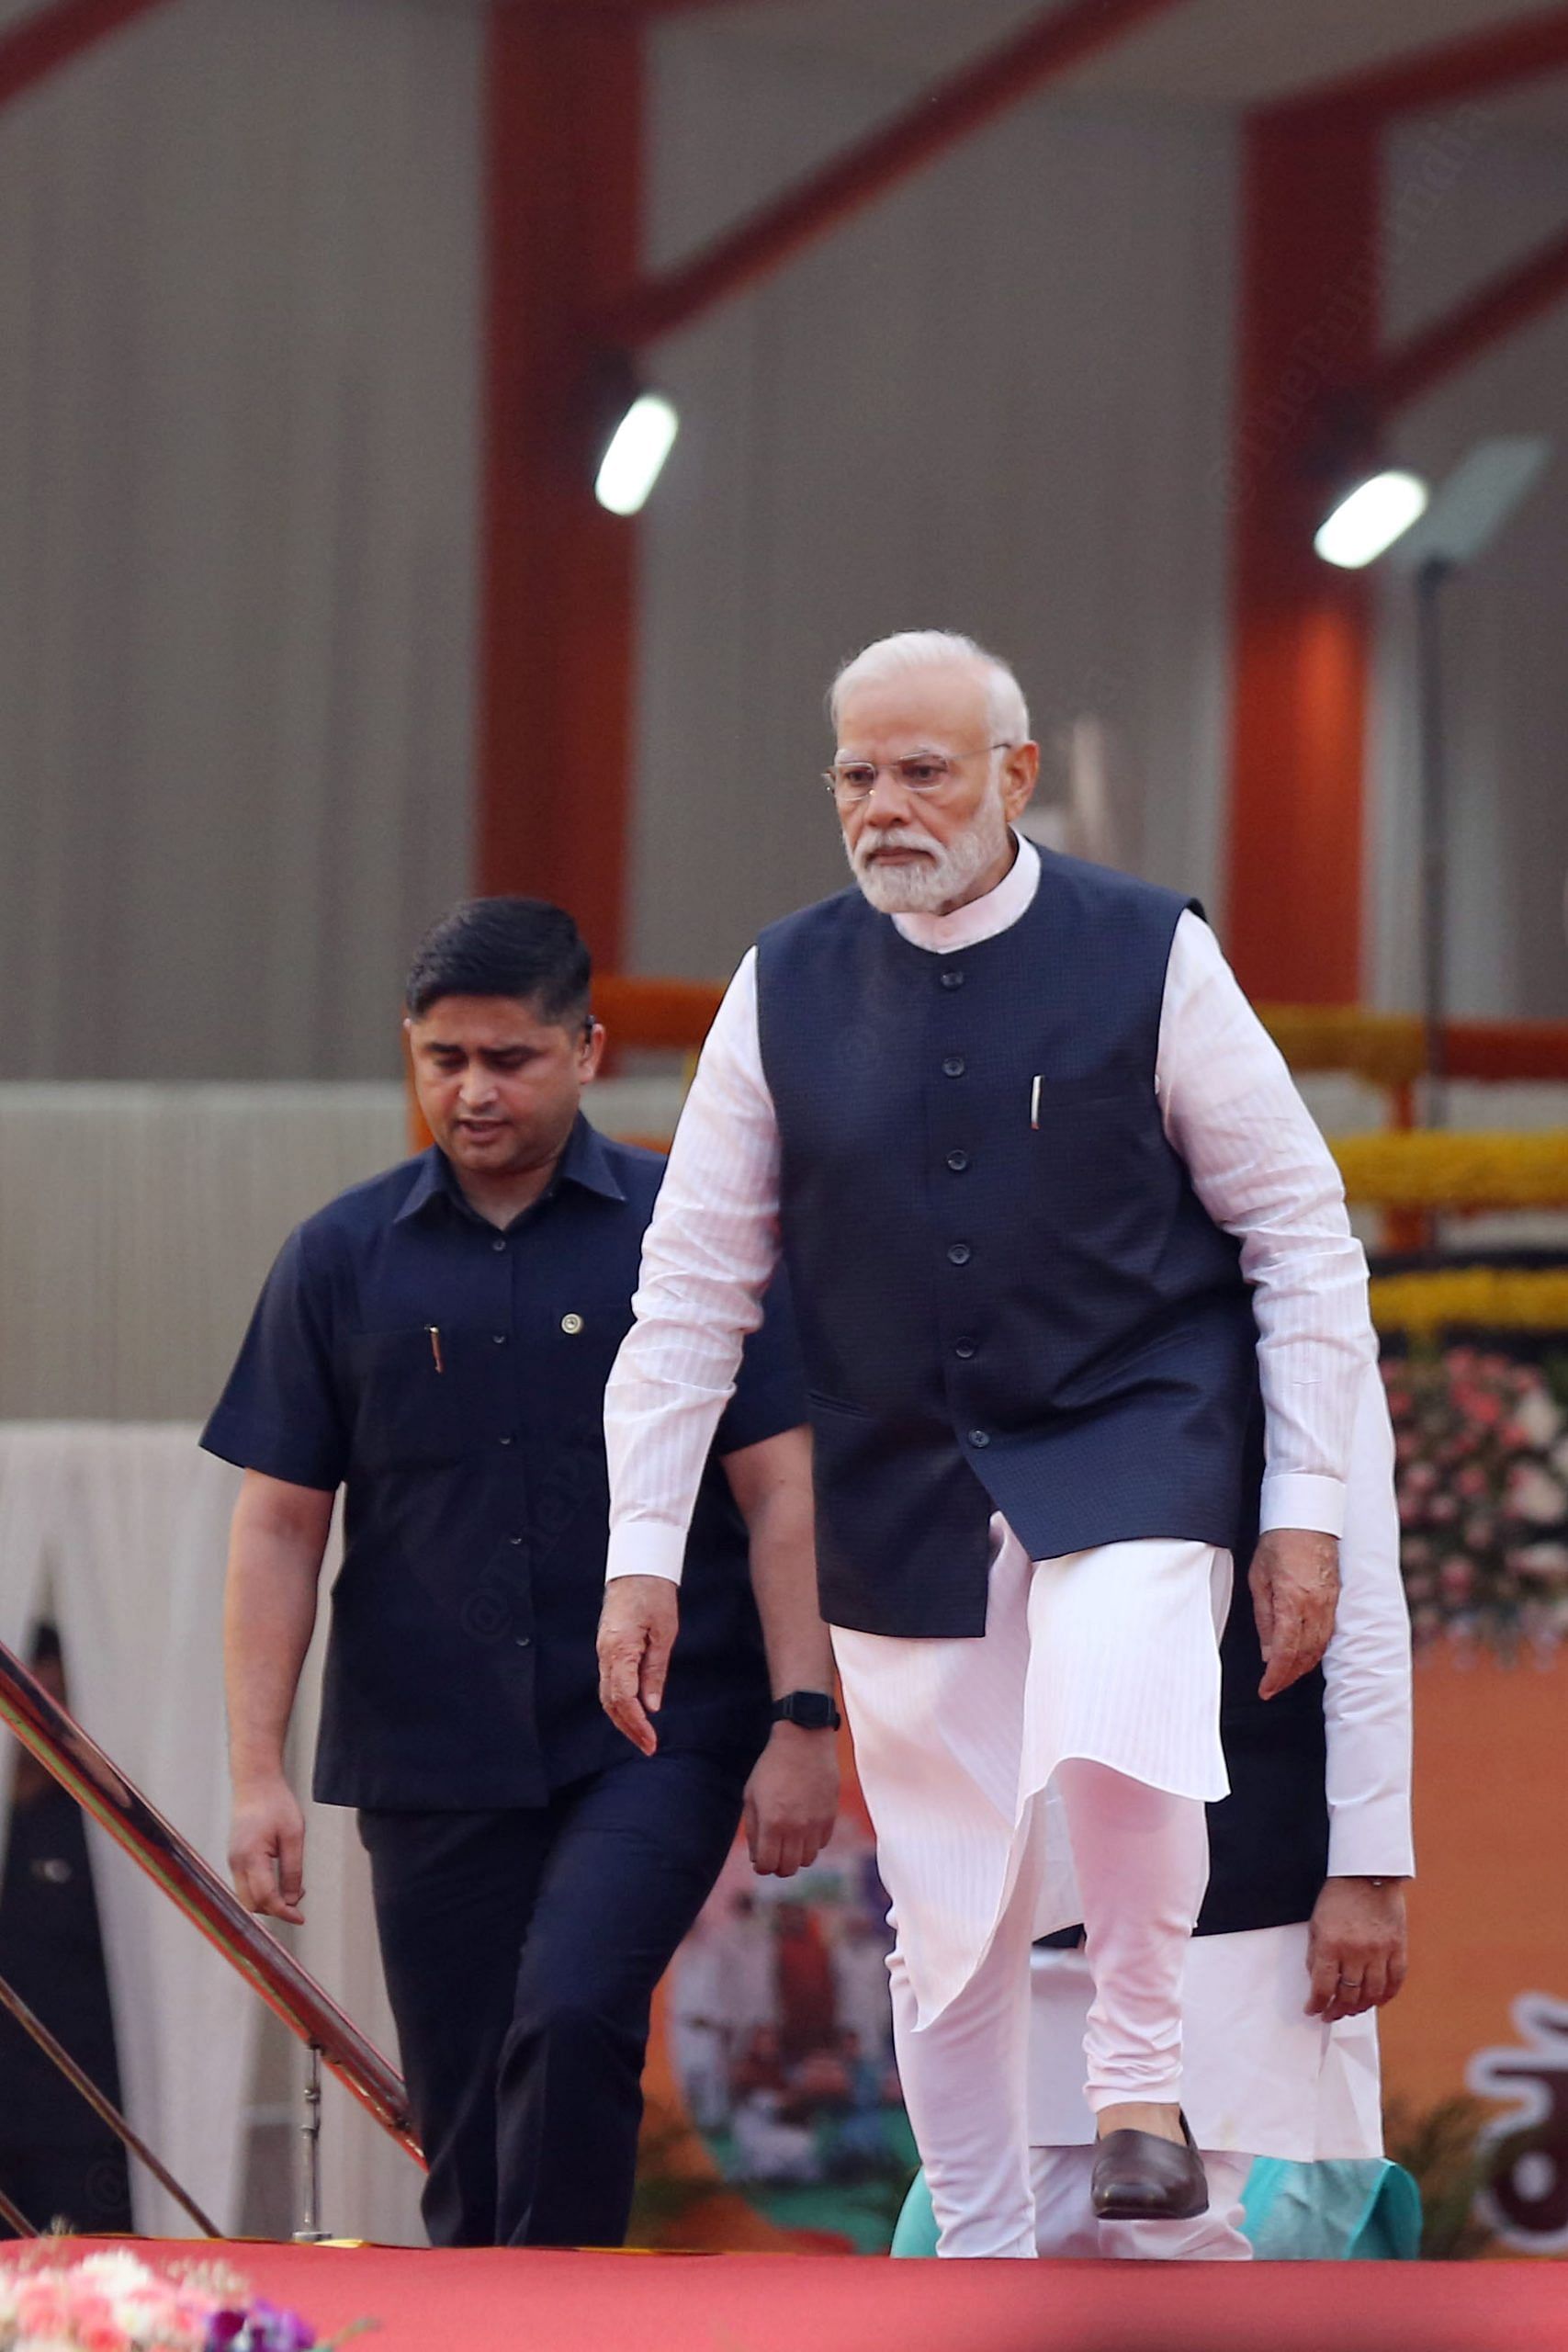 Prime Minister Narendra Modi arrives at the event | Photo: Suraj Singh Bisht | ThePrint